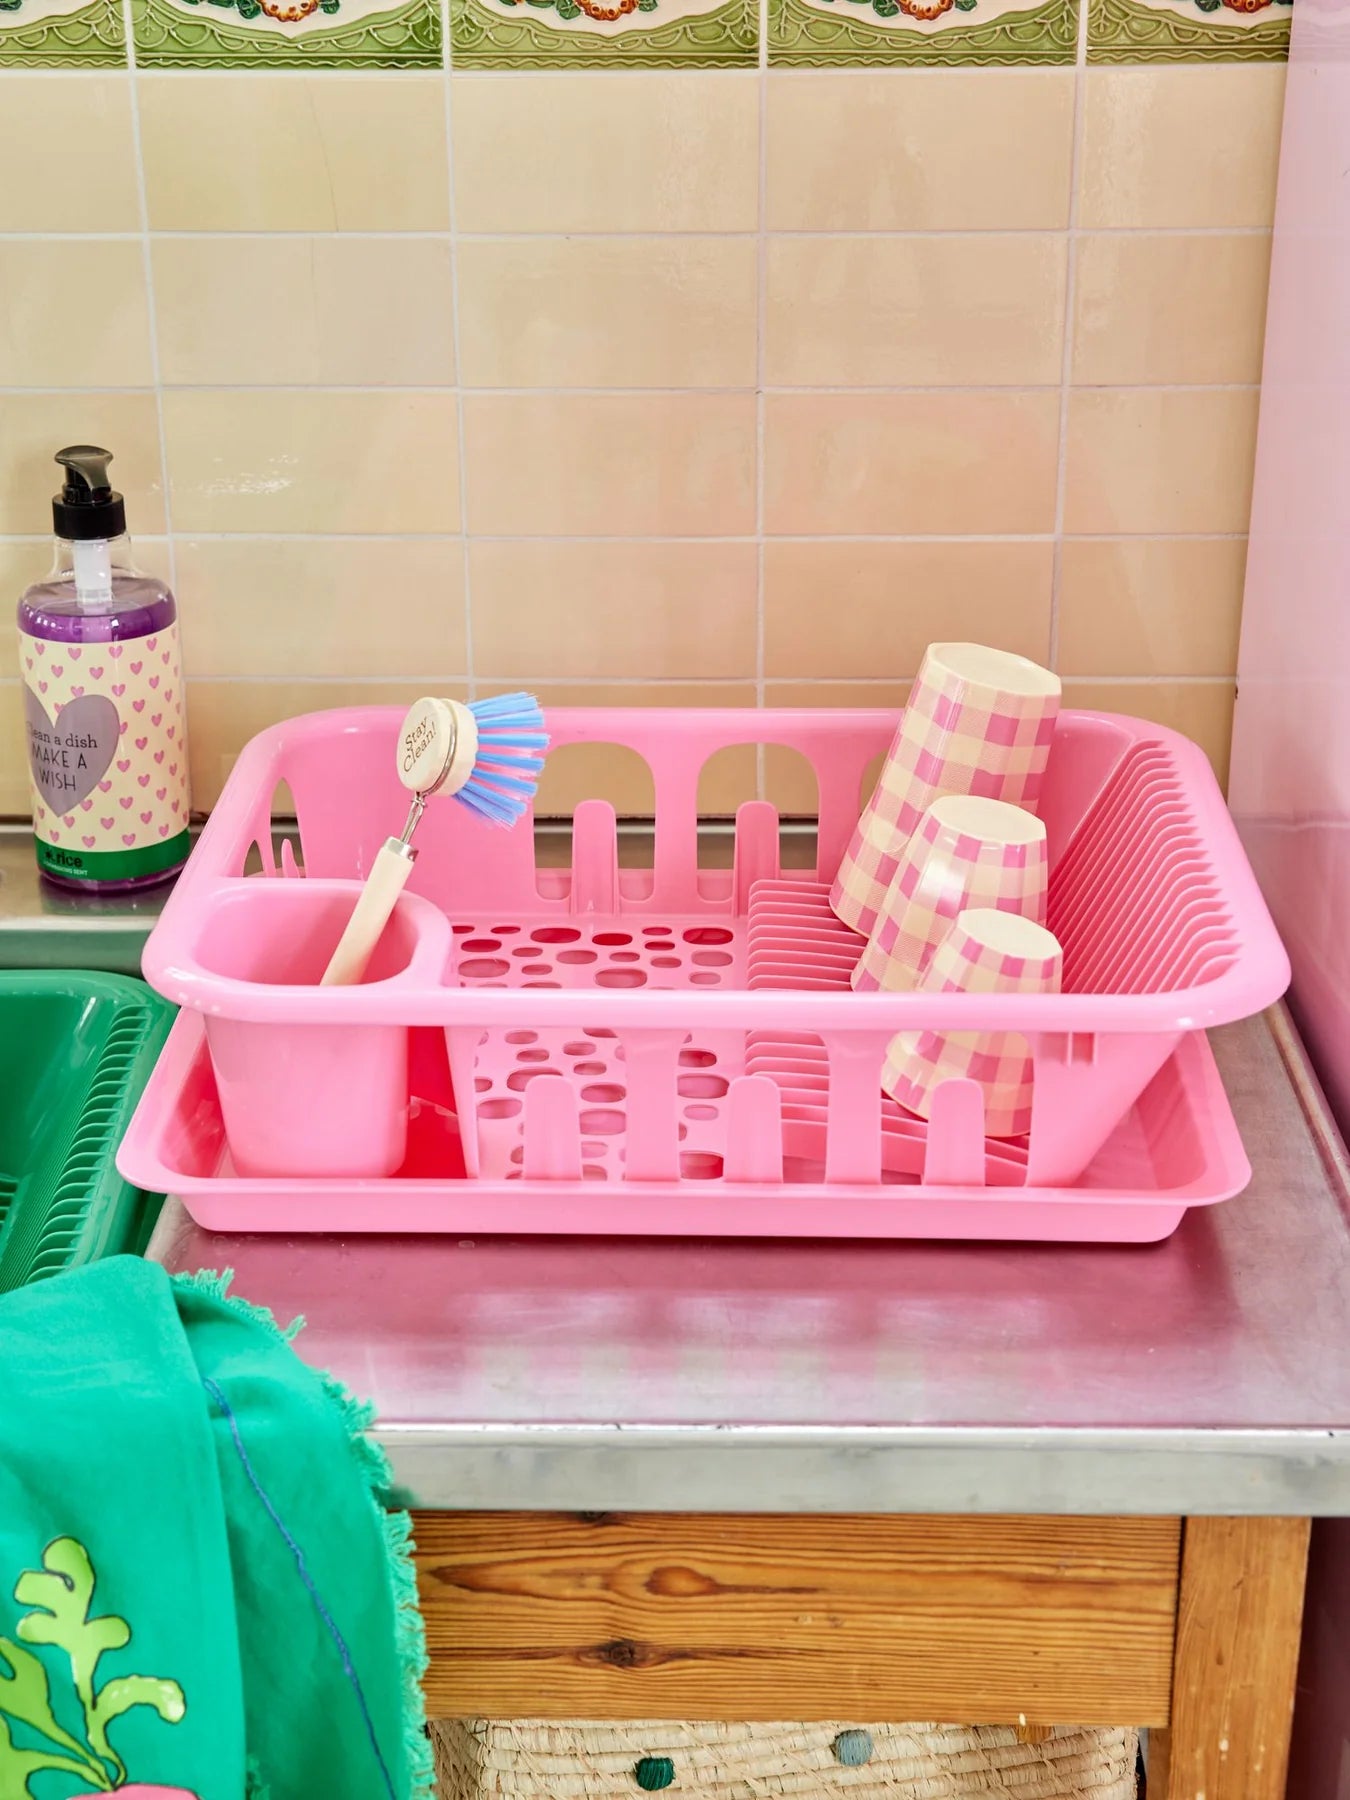 Égouttoir vaisselle rose